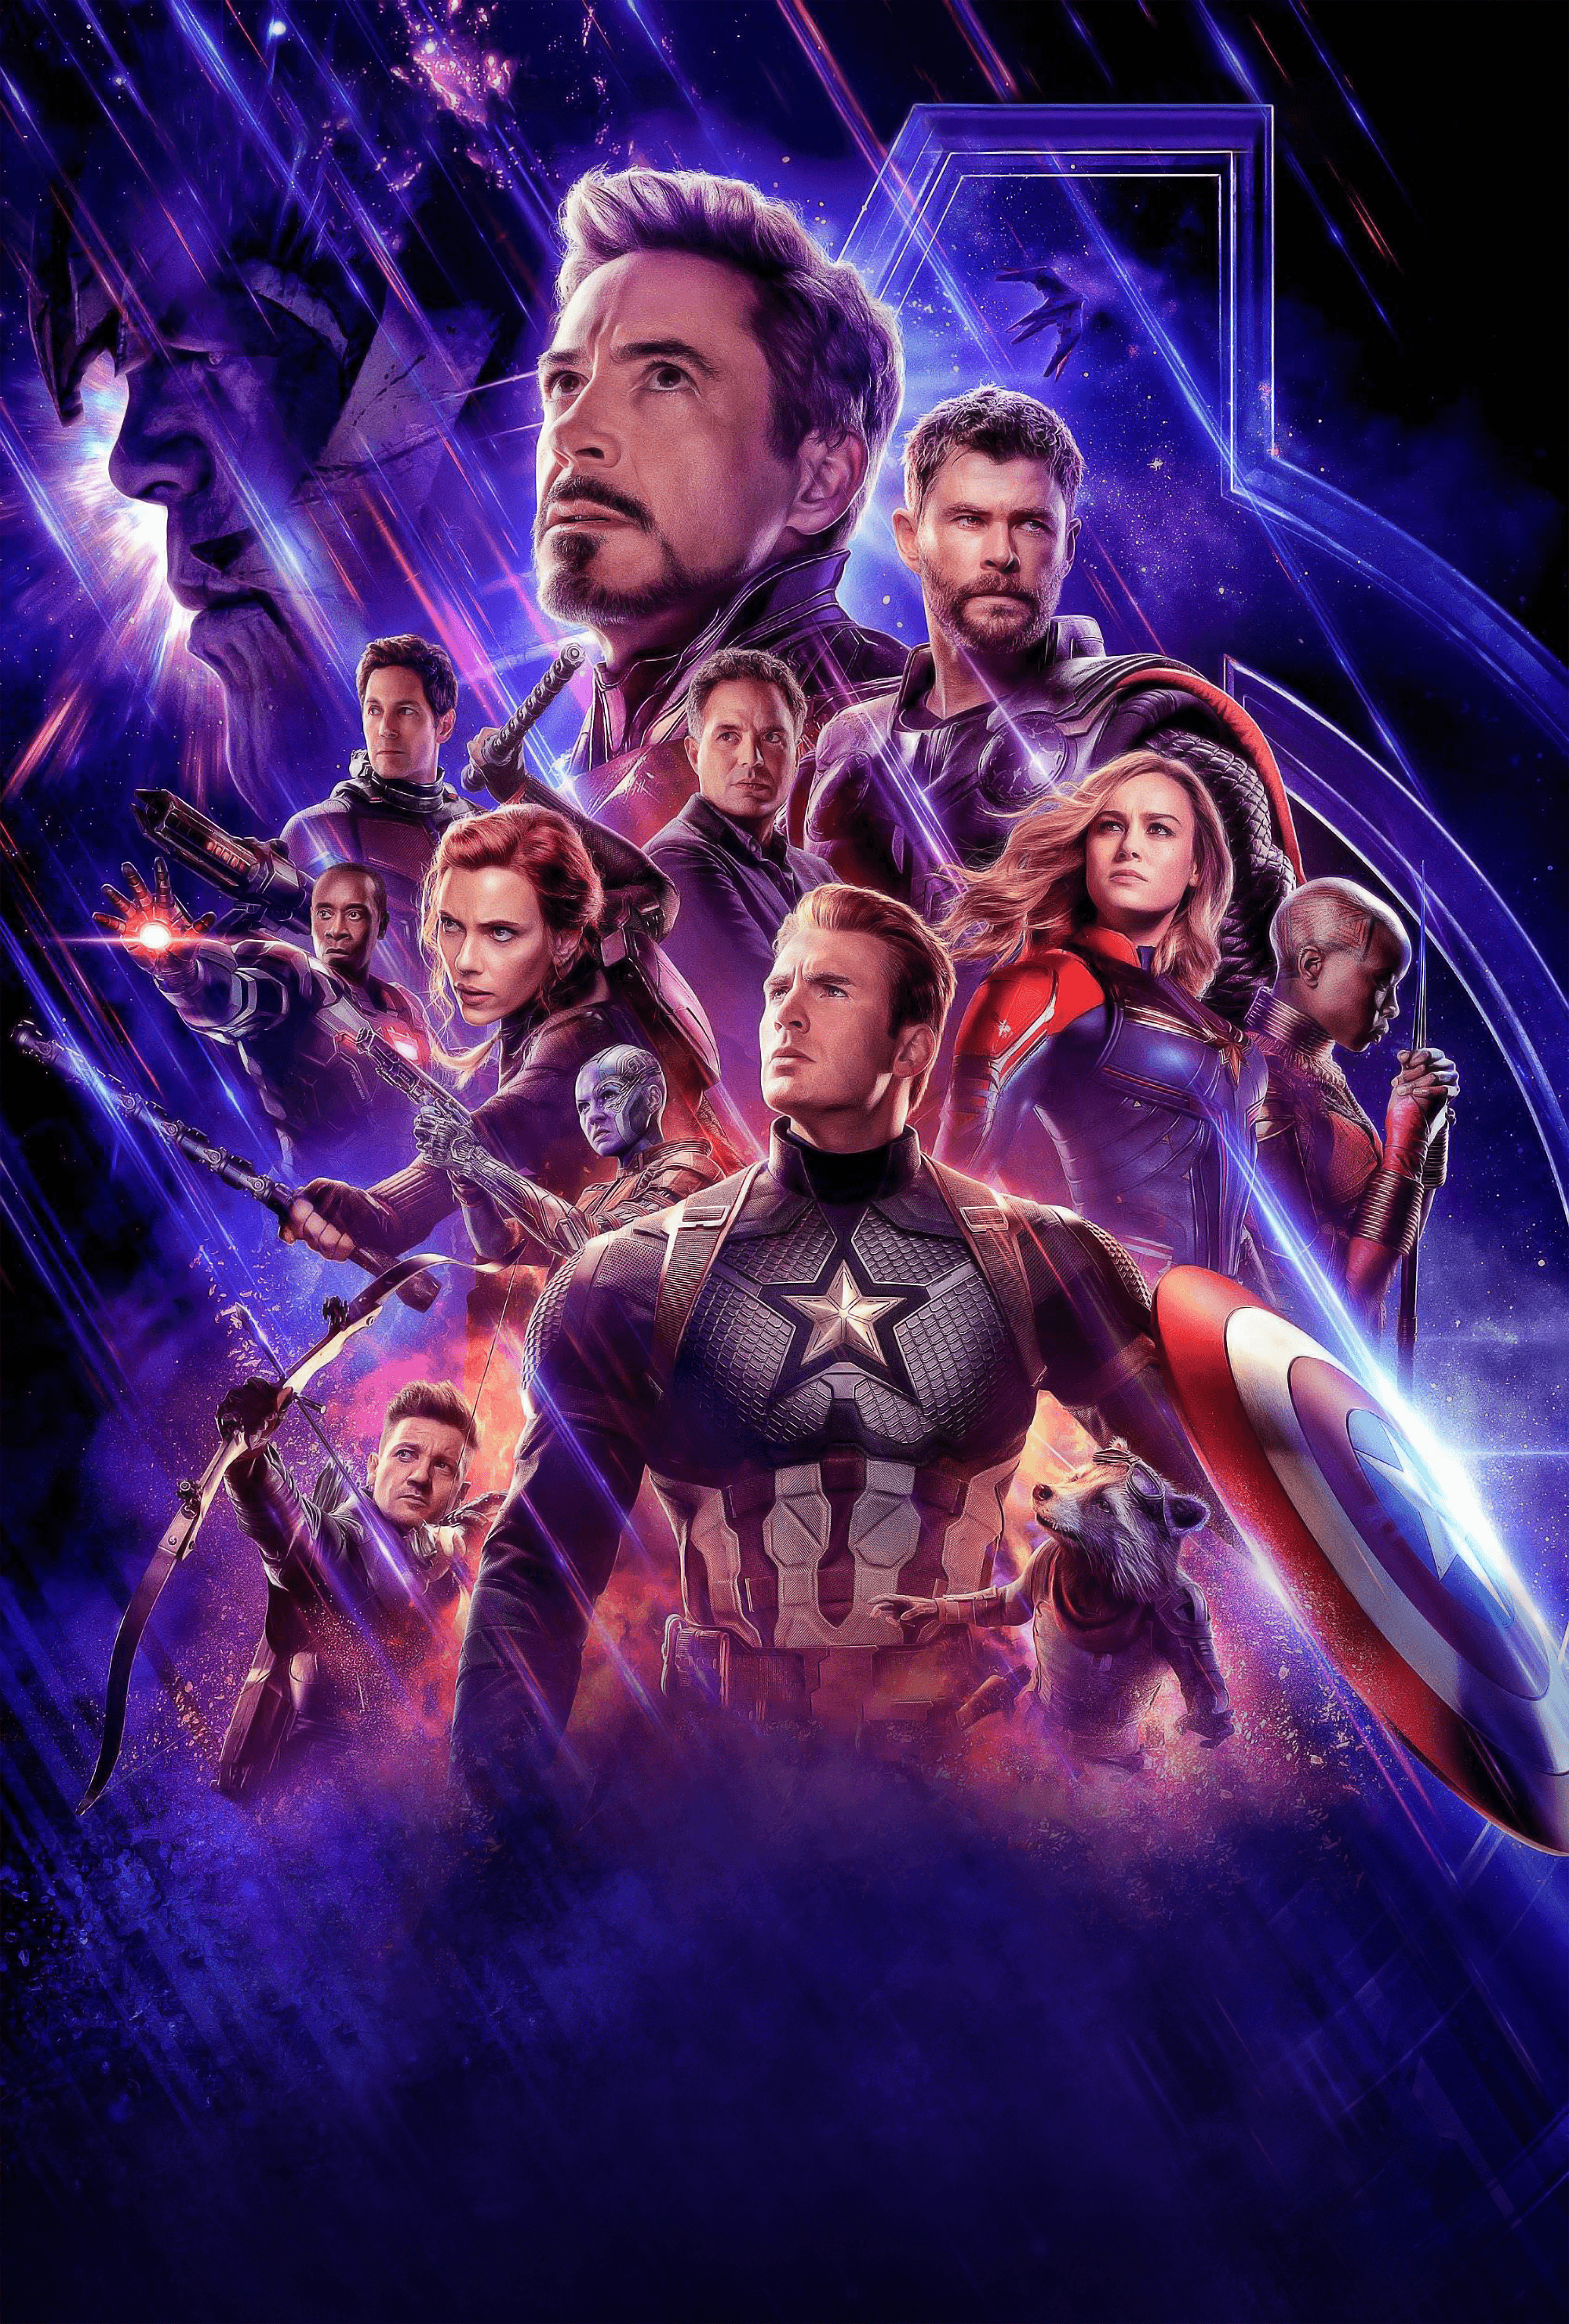 Avengers Endgame poster wallpaper. Smart Phone Wallpaper